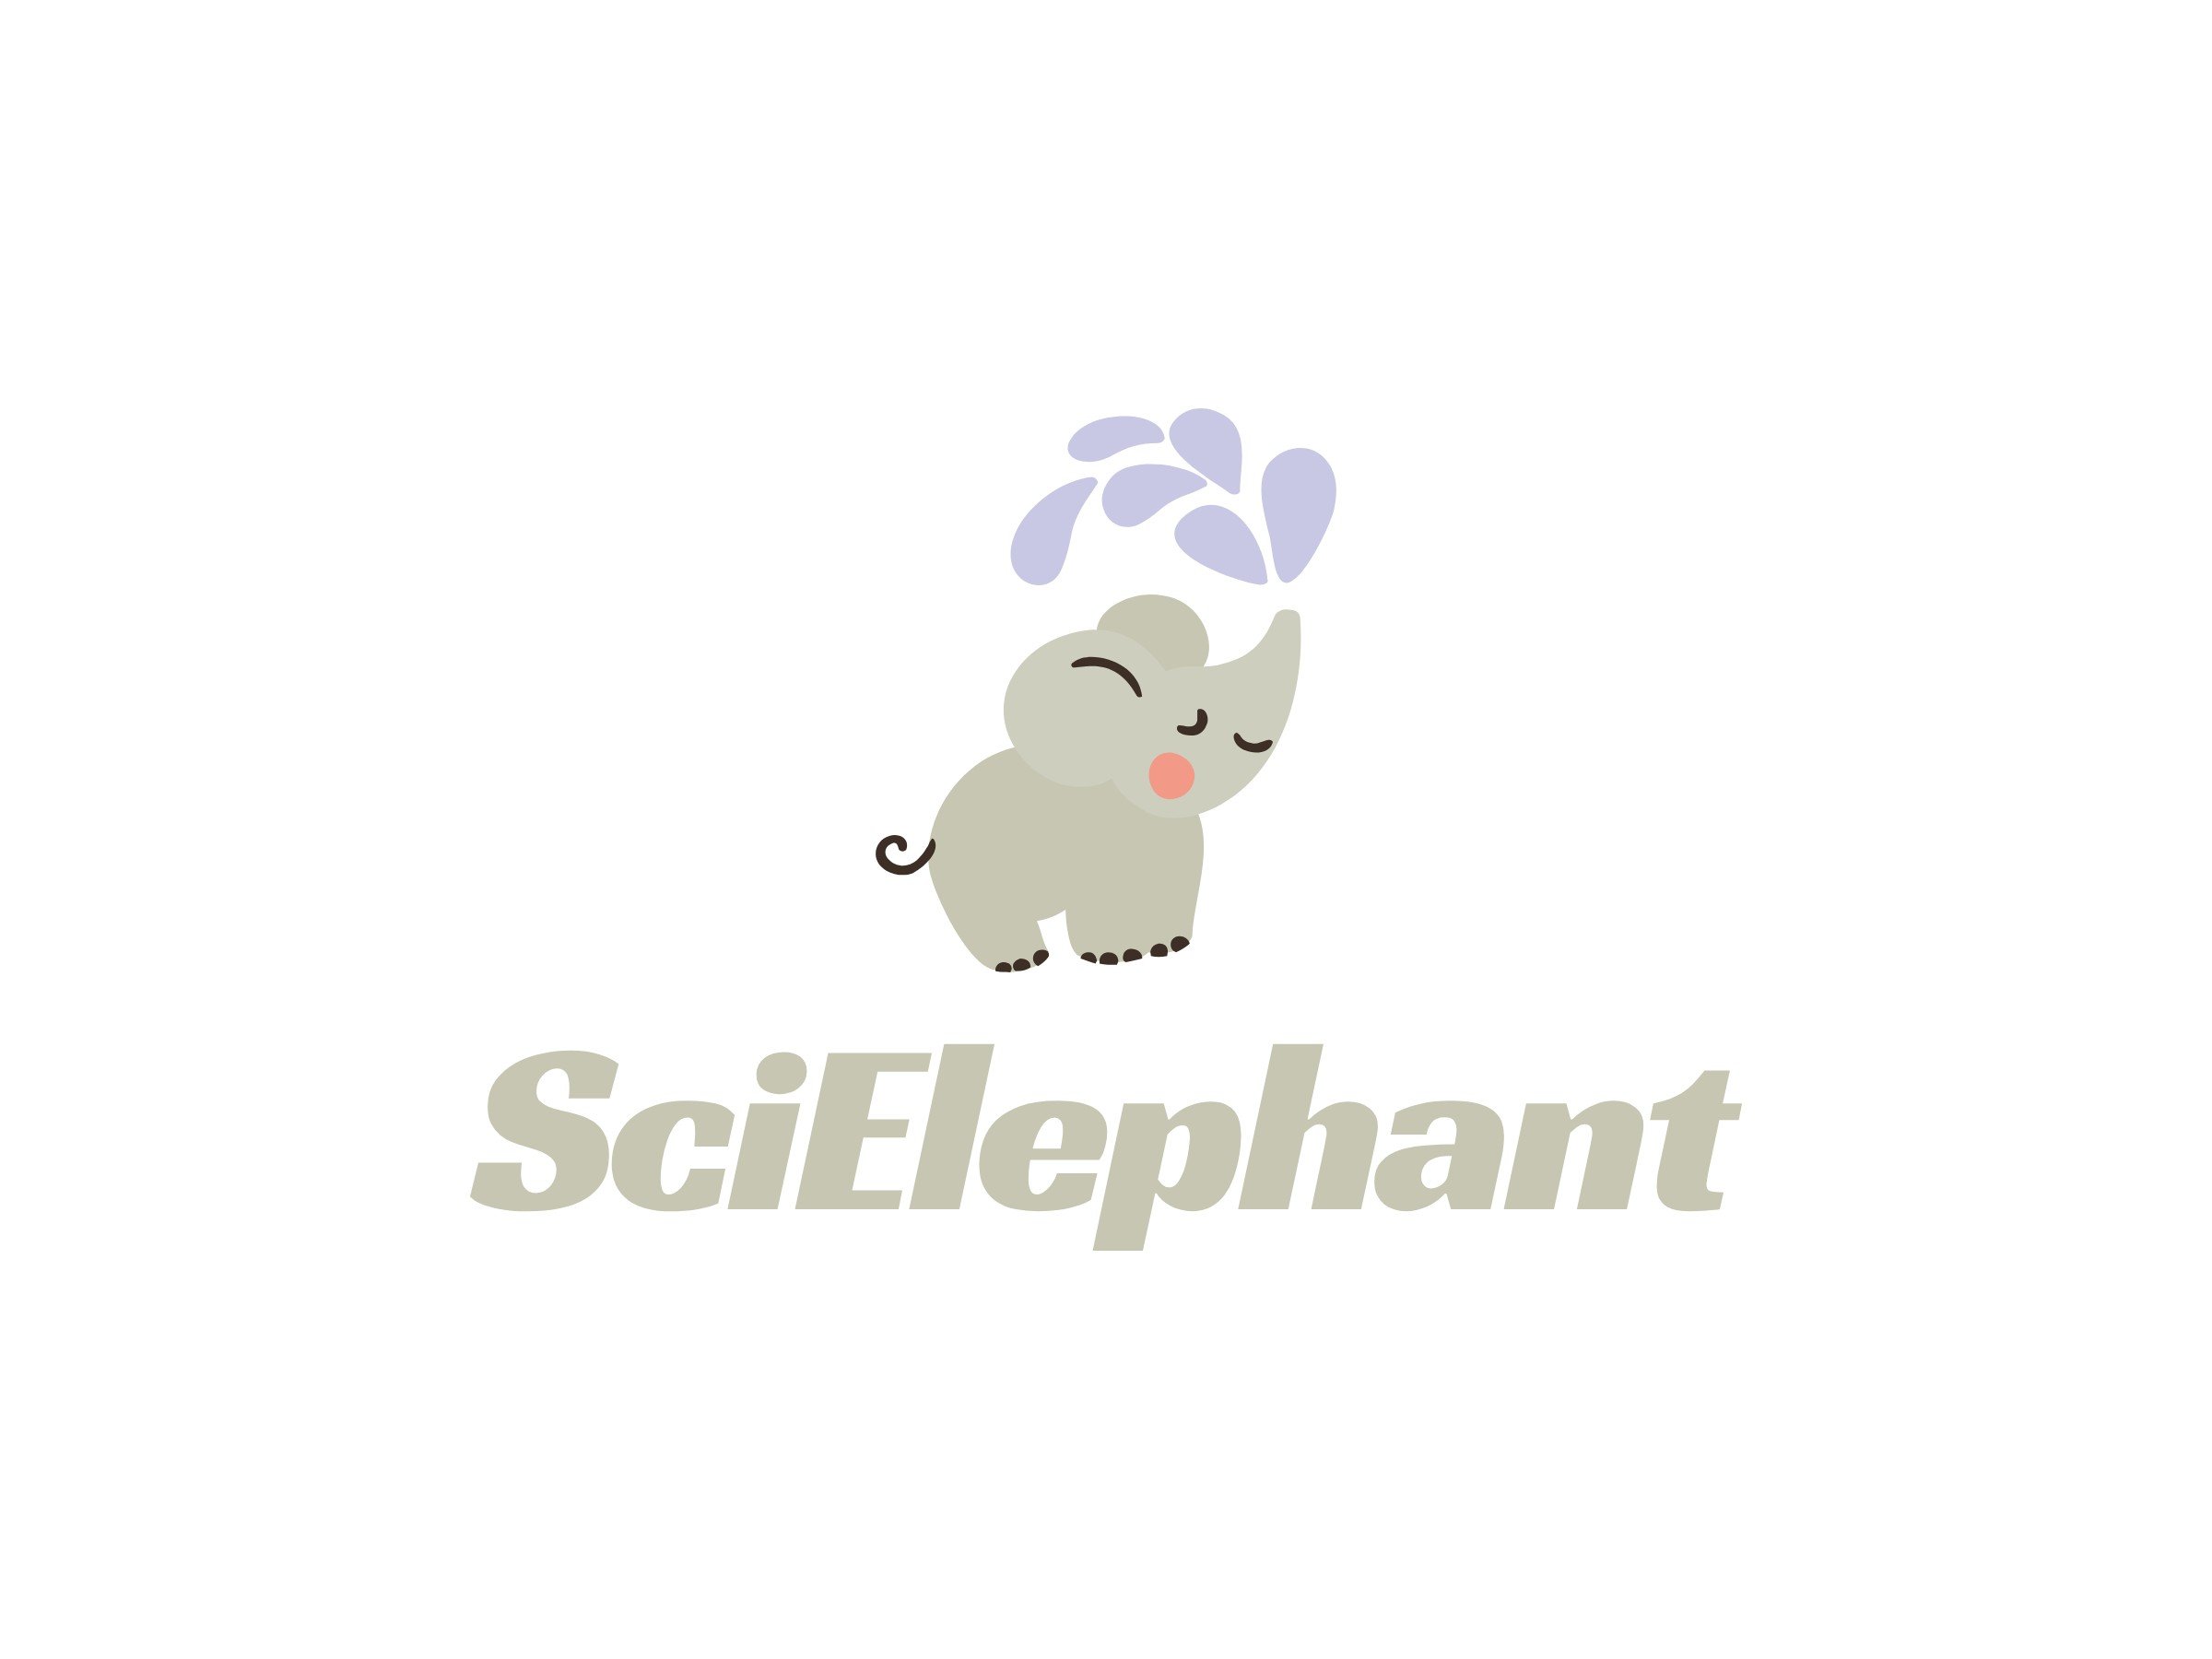 SciElephant logo design